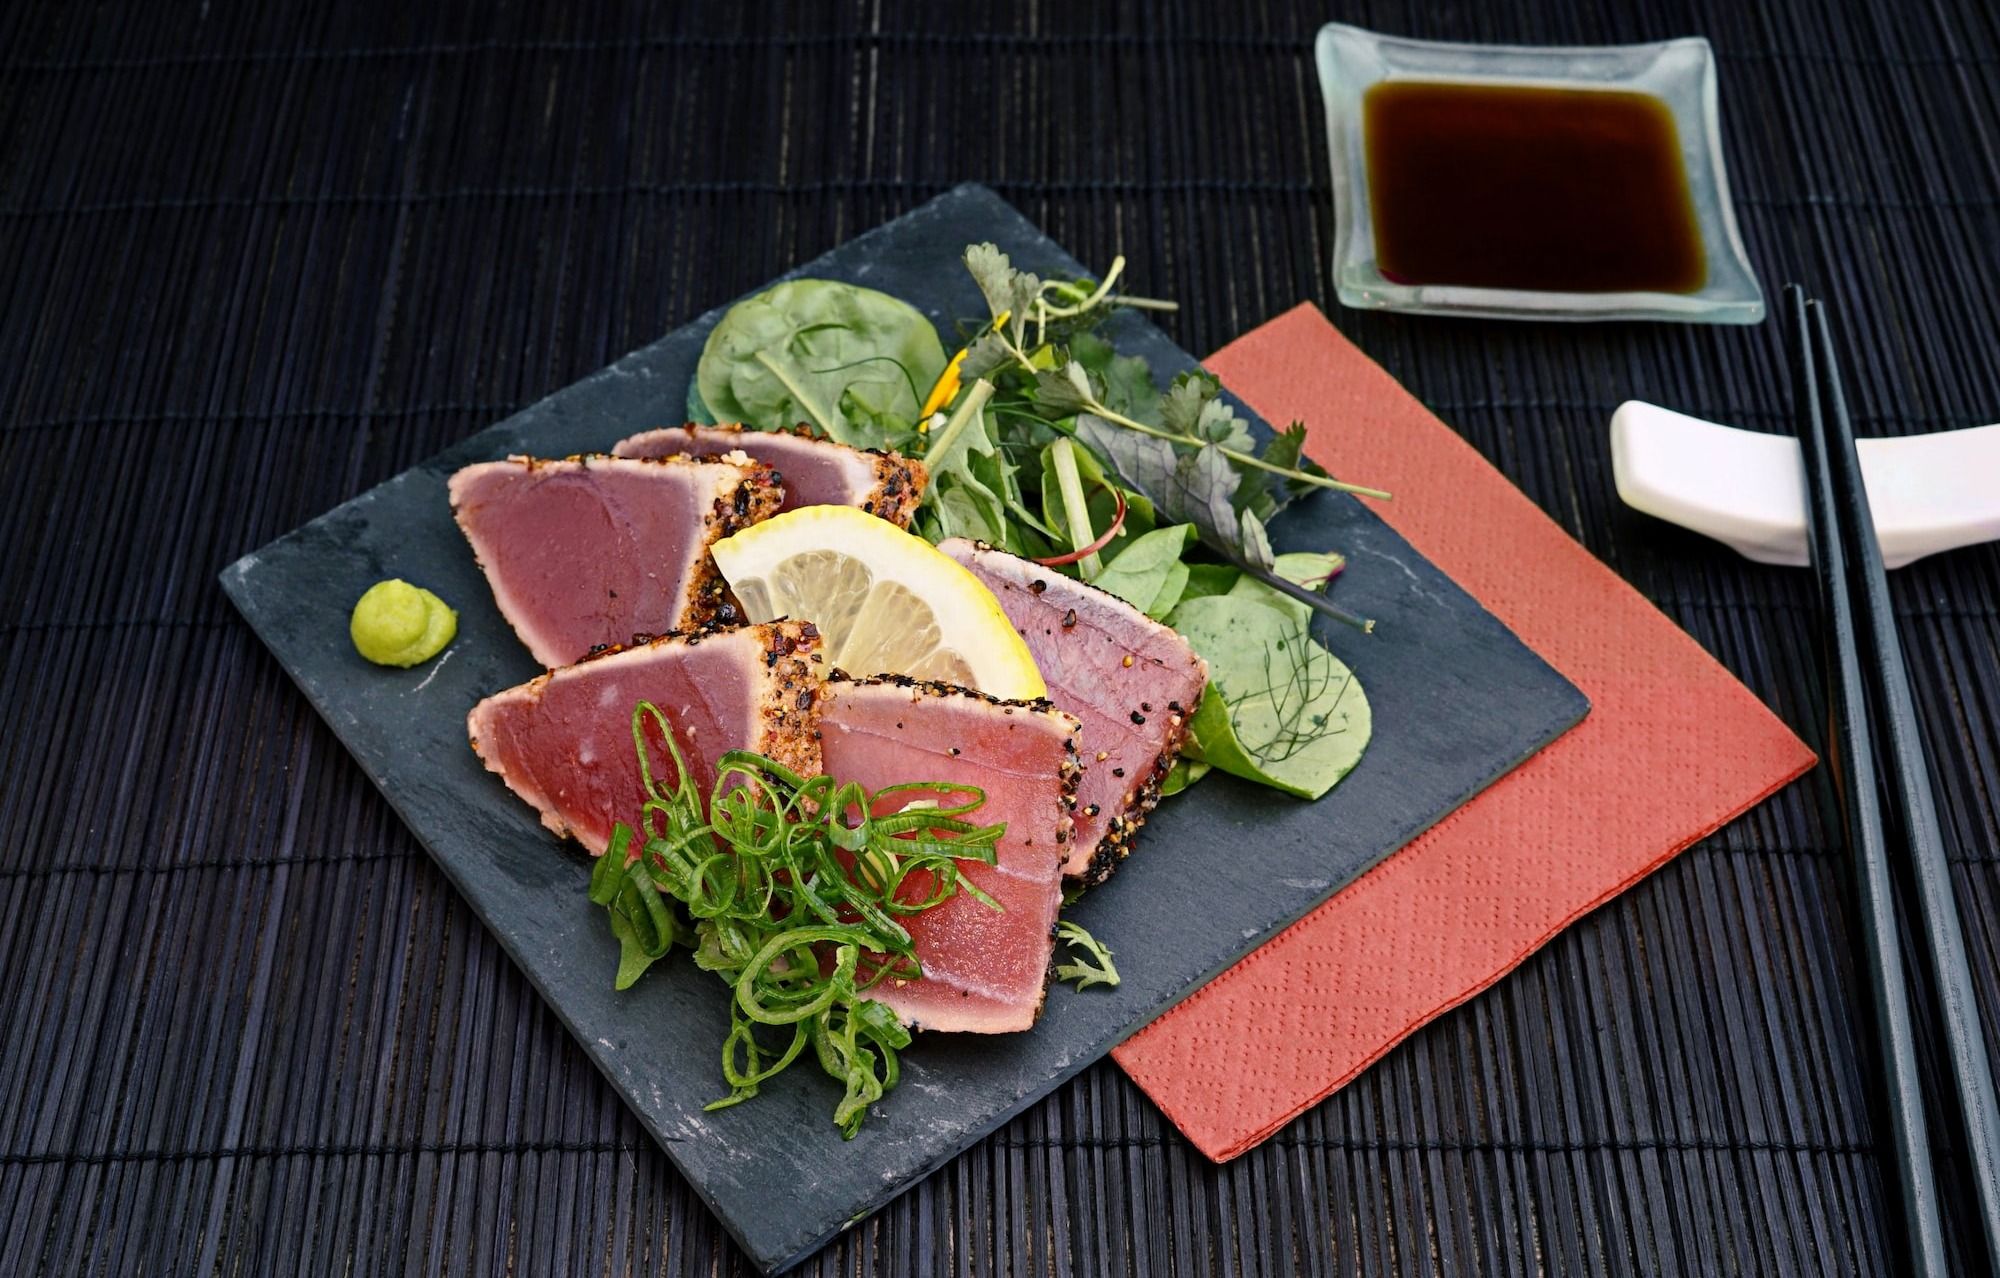 tuna with lemon and greens salad on black plate